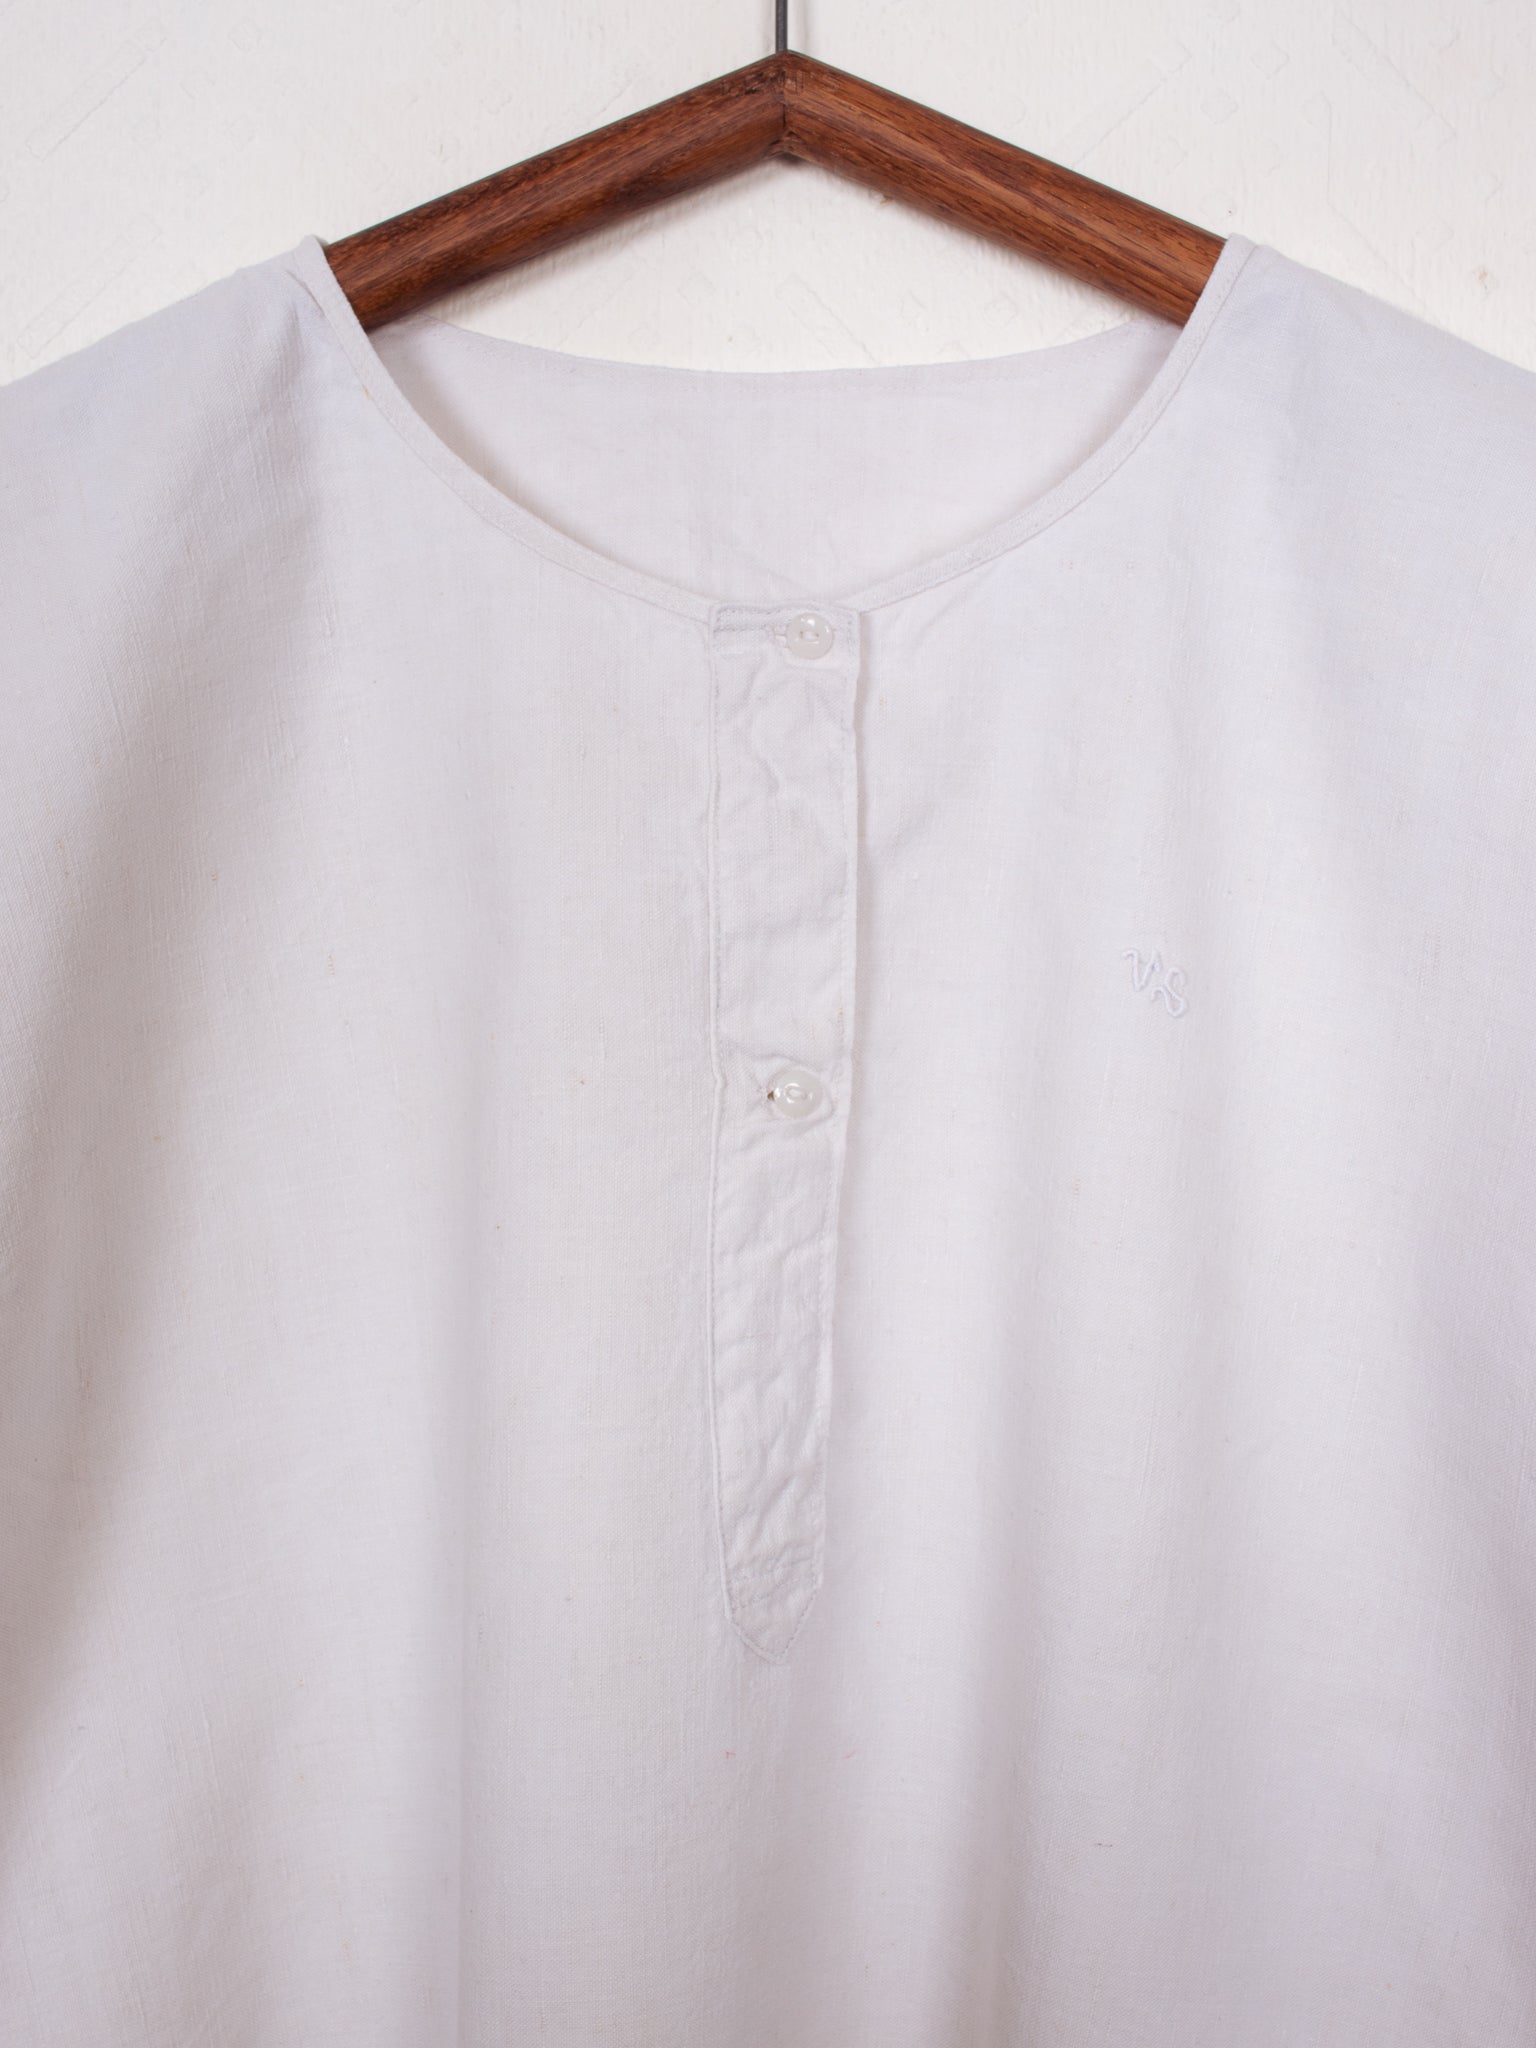 shirts & blouses 30s Night Shirt - XL